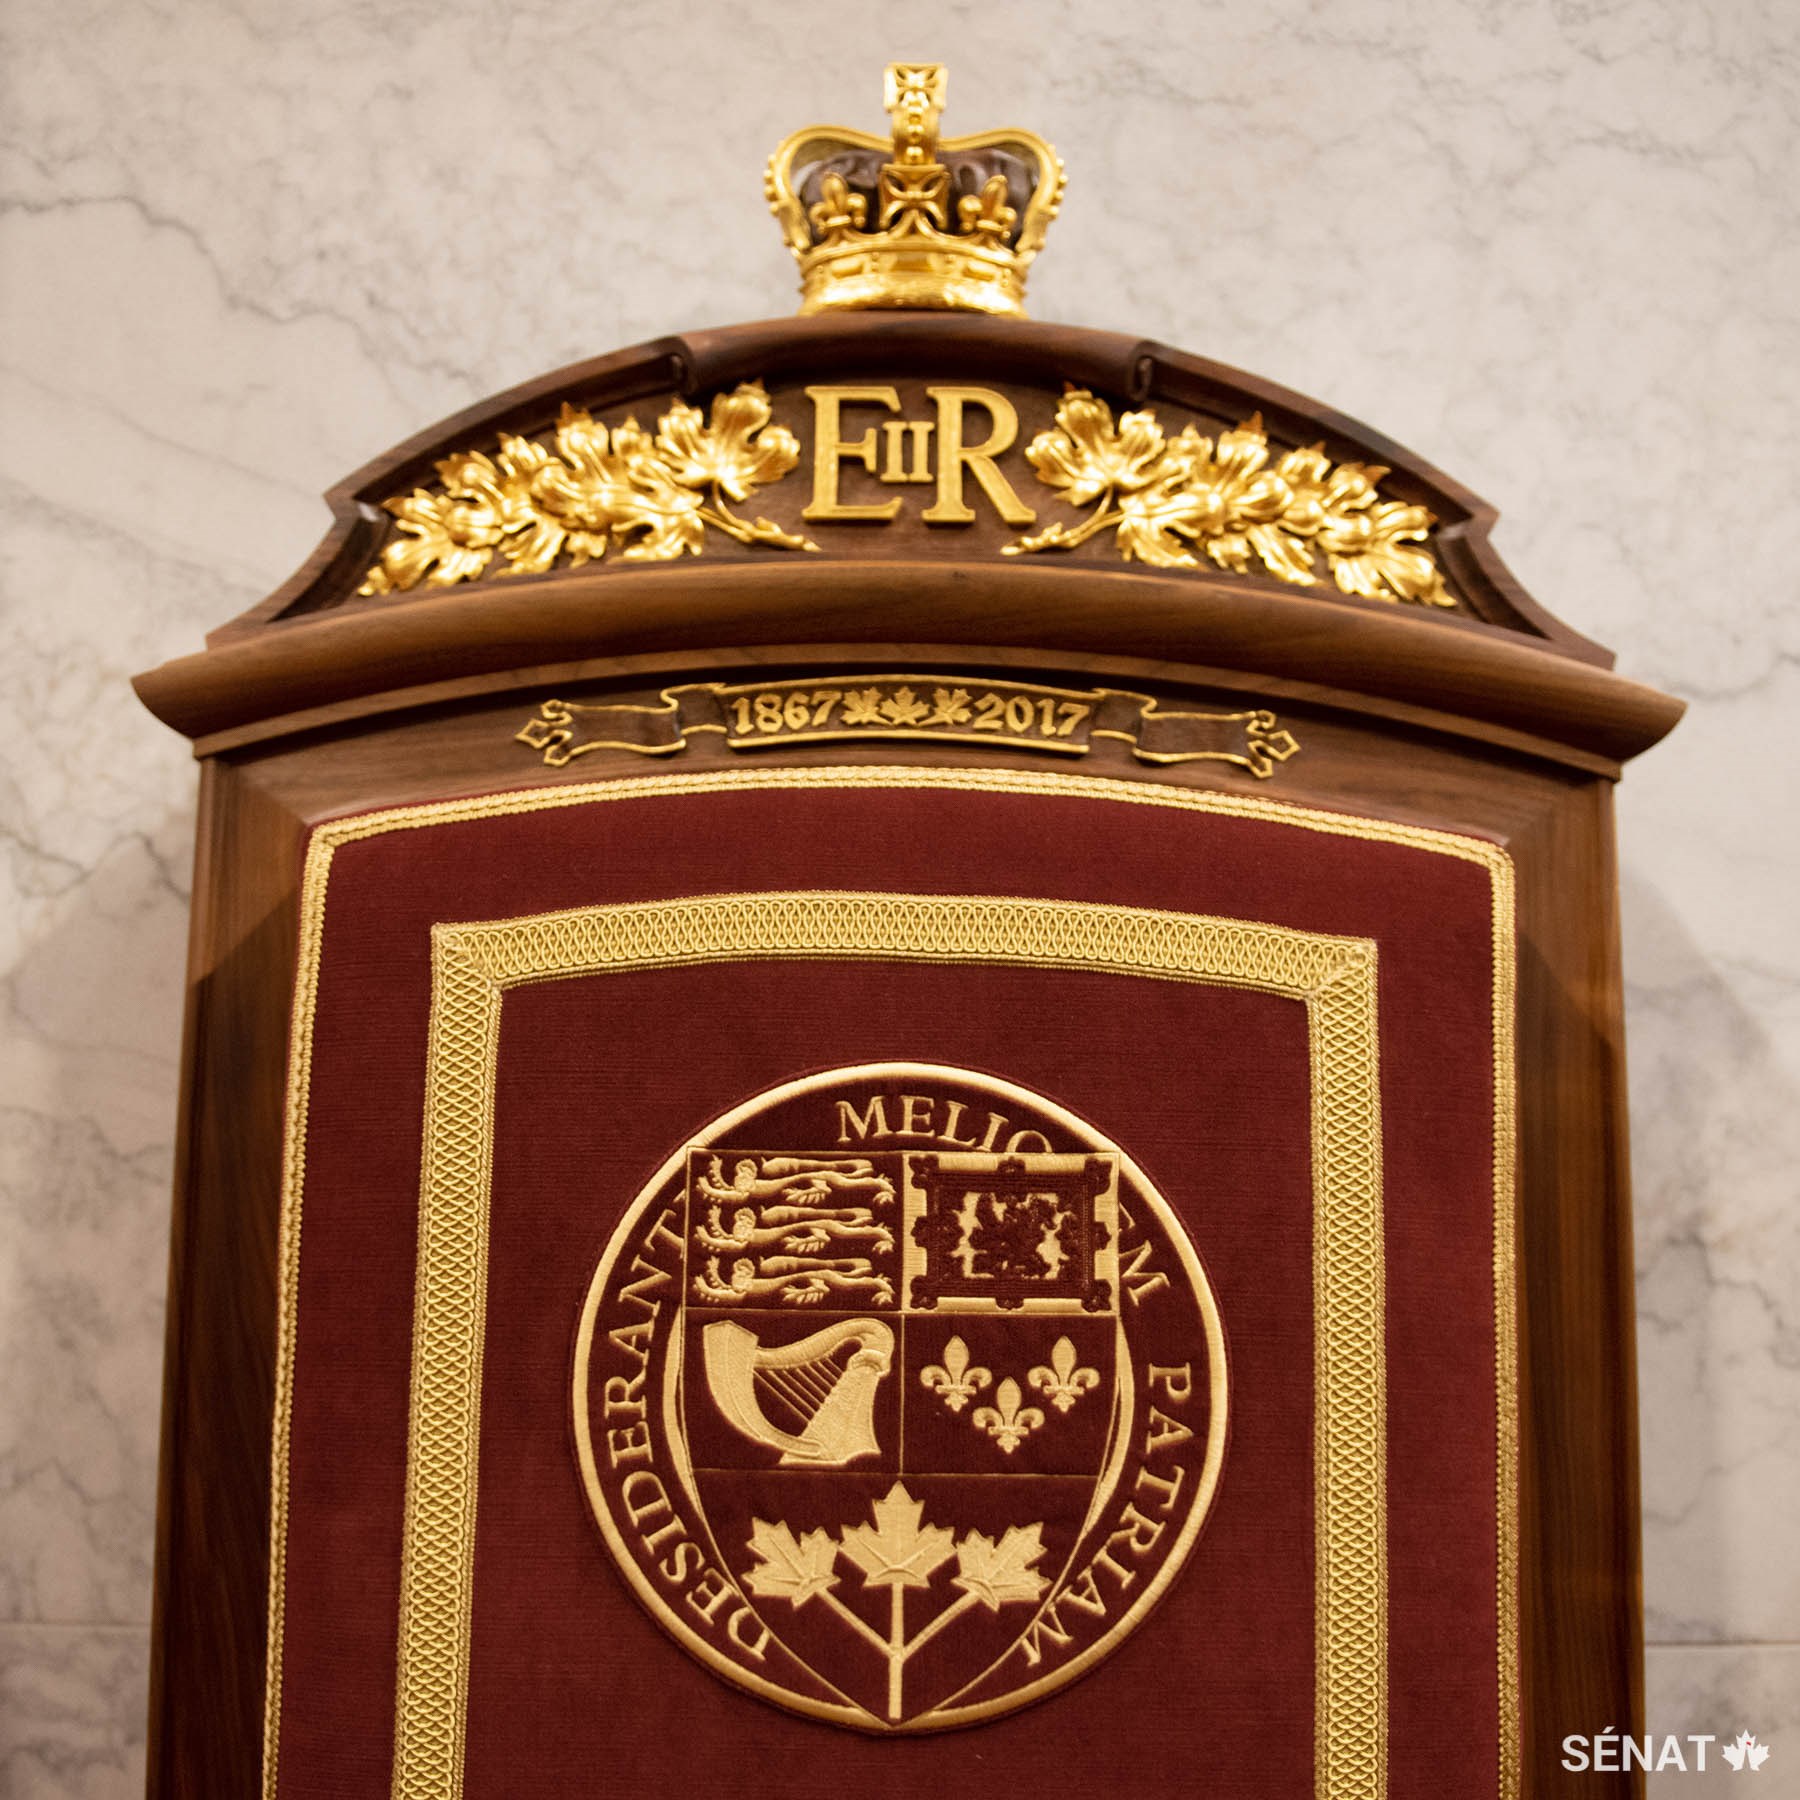 La tête des fauteuils intègre du noyer commun, qui provient du domaine du château de Windsor. Le monogramme de la Reine a été sculpté dans le trône du monarque; il est entouré de feuilles d’érable et surmonté de la couronne de saint Édouard.